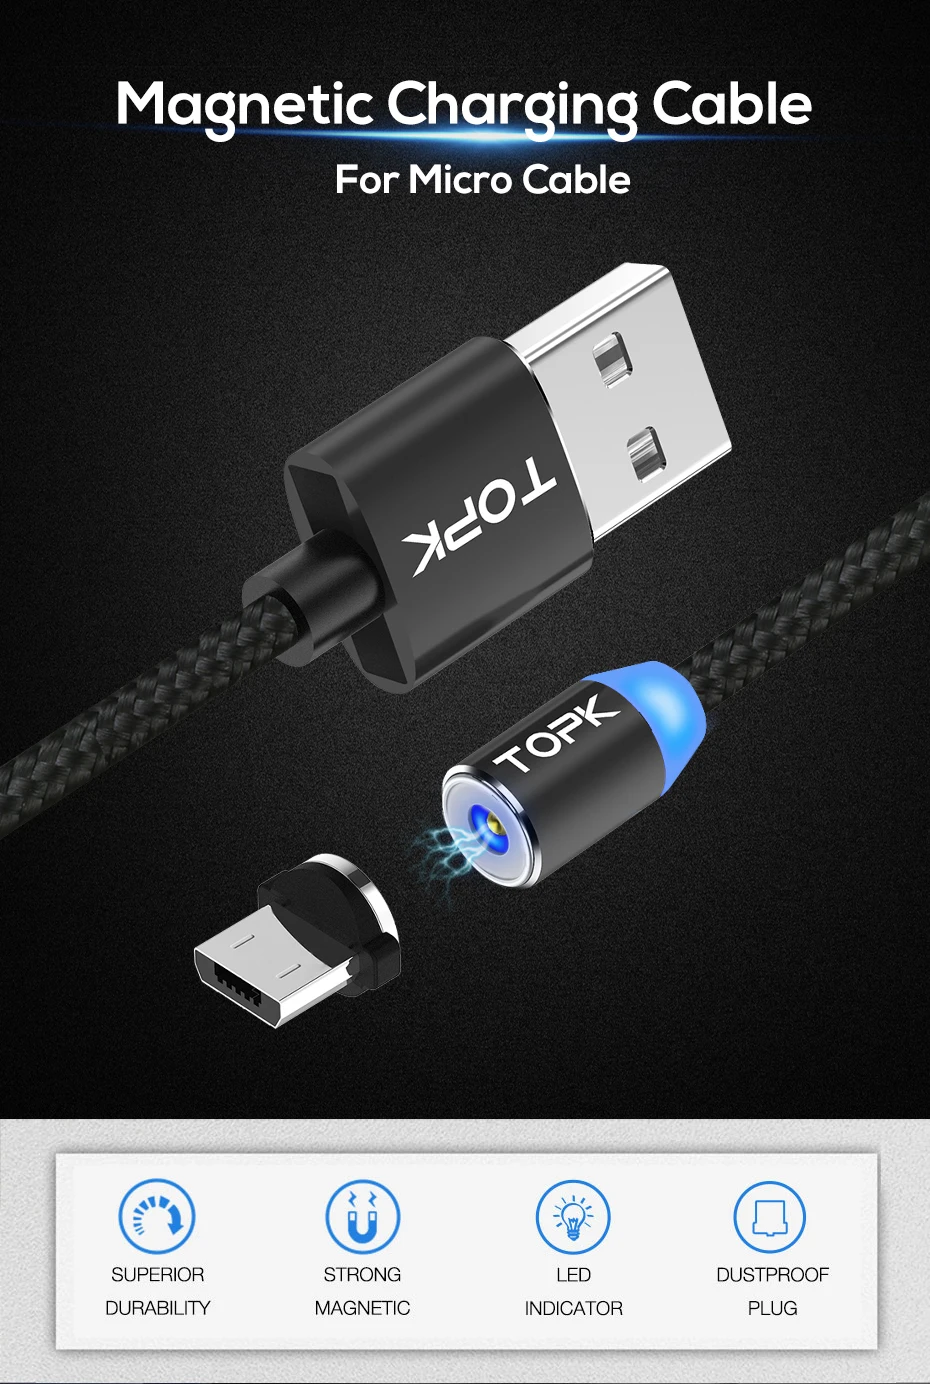 TOPK AM23 1 м светодиодный магнитный СВЕТОДИОДНЫЙ модуль панели управления Тип usb C кабель магнит Зарядное устройство USB C для iPhone samsung huawei Xiaomi redmi note 7